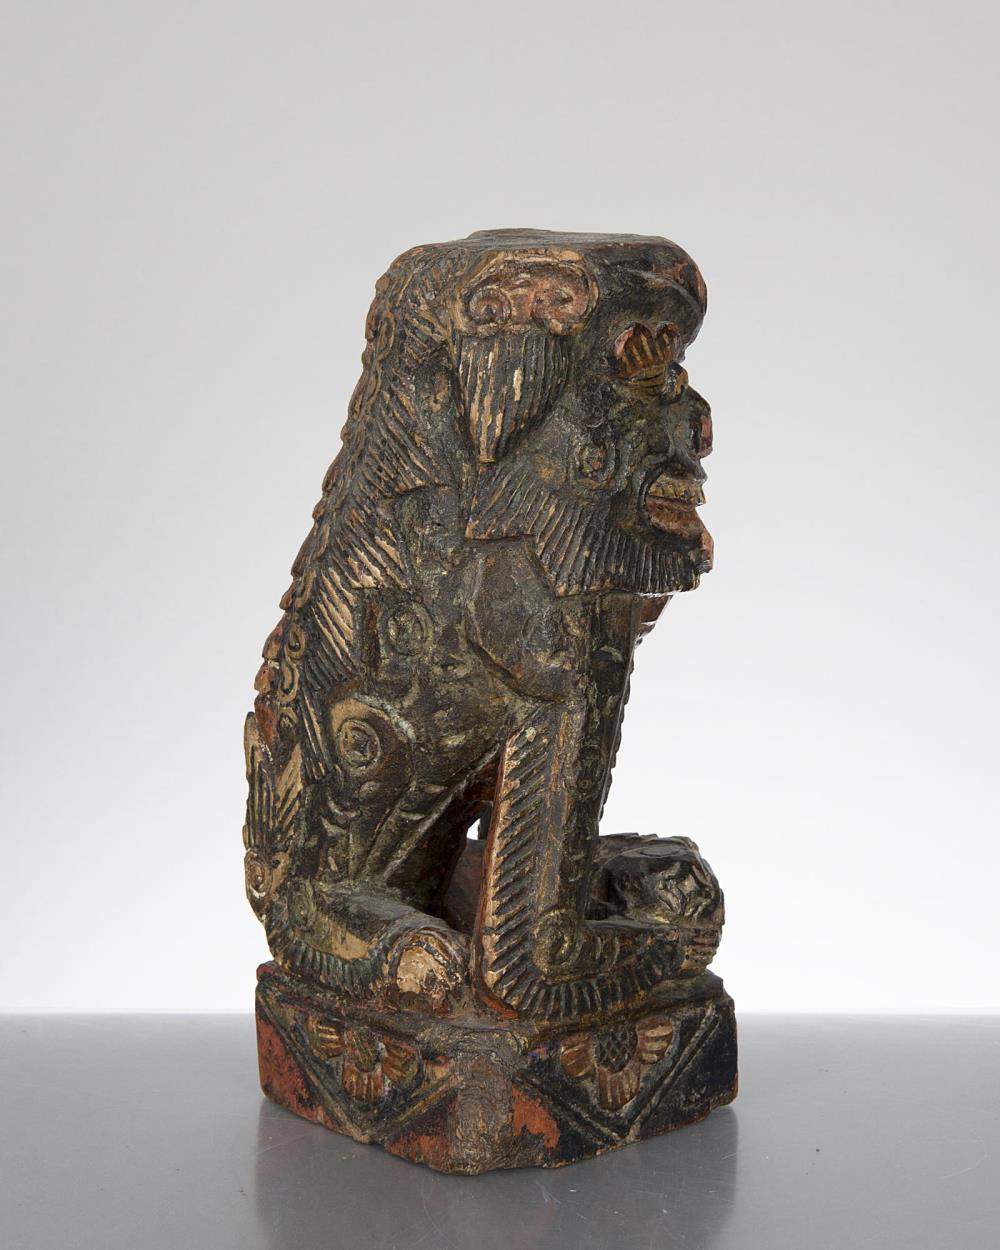 sculpture en bois d'un chien de Fo, Sud Est Asiatique.
sculpture en bois d'un chien de Fo tenant une - Image 2 of 3